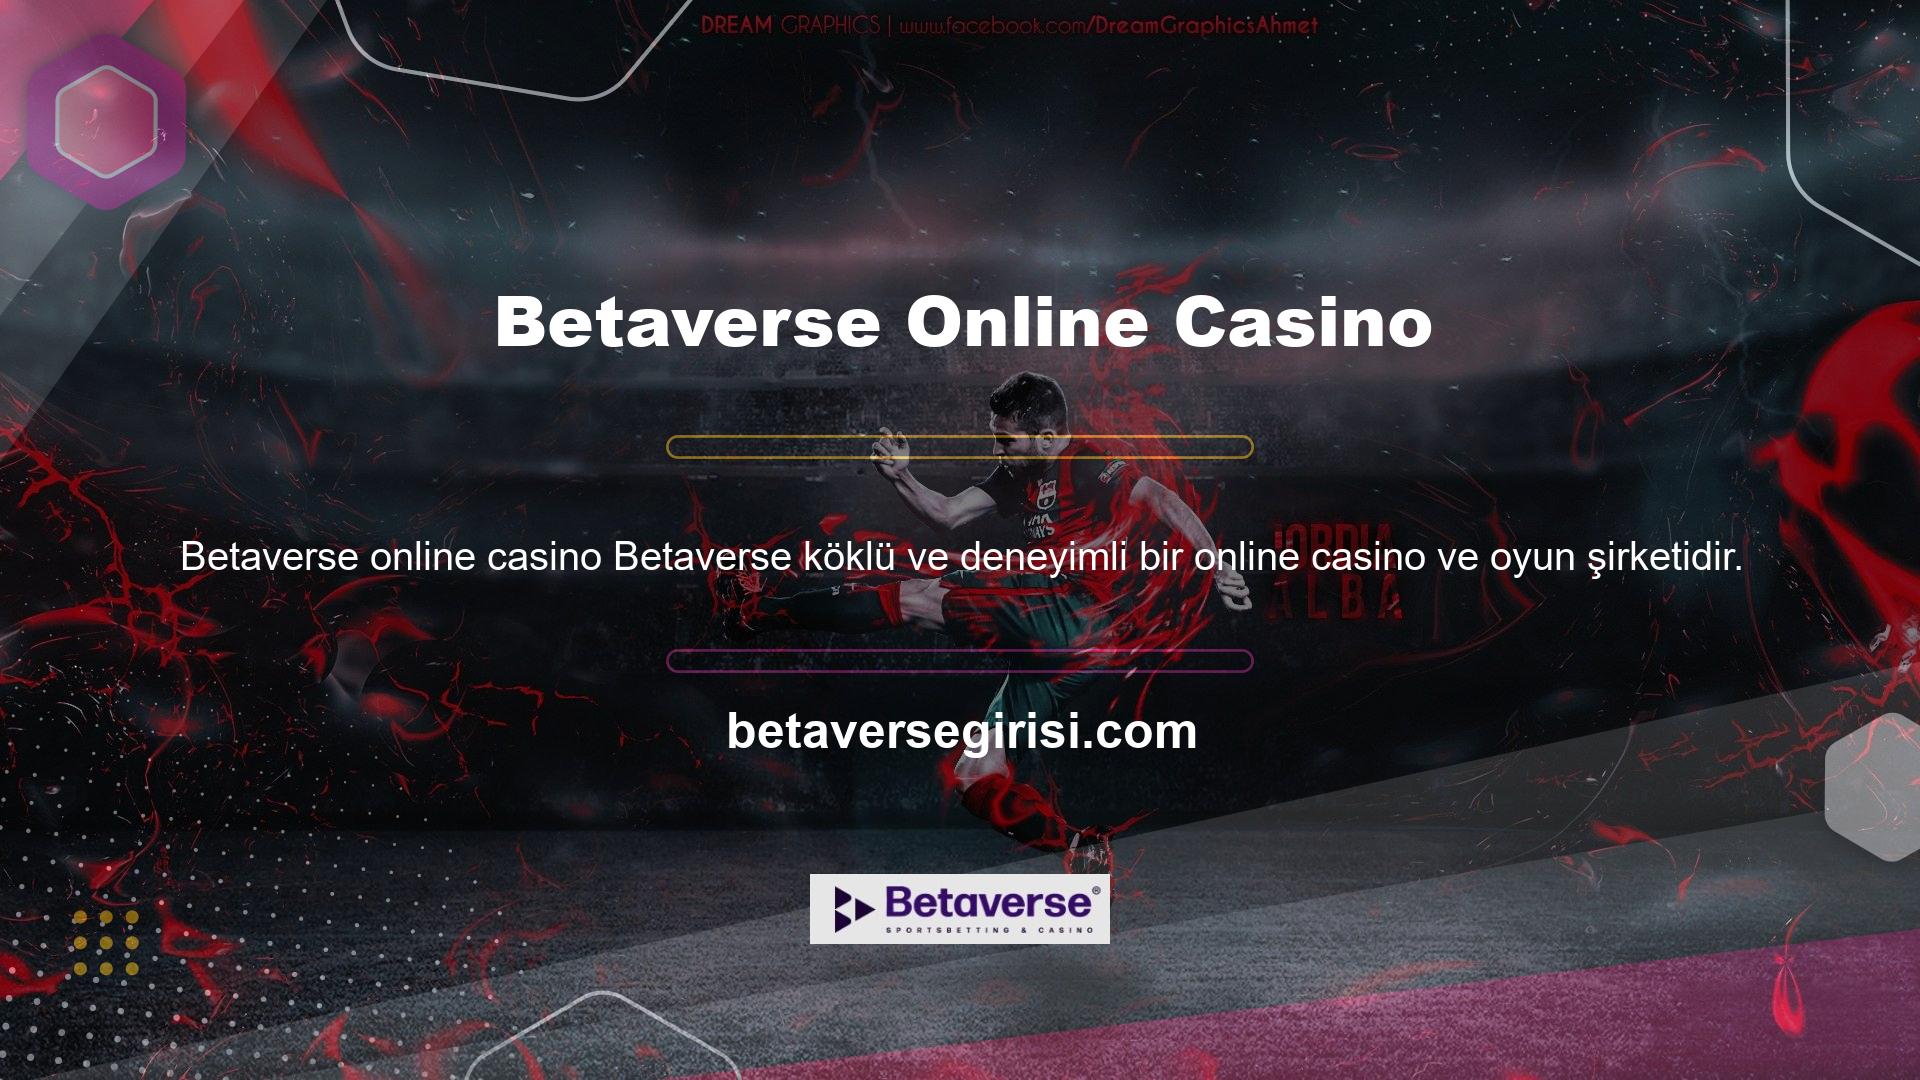 Betaverse önde gelen casino ve oyun sağlayıcılarından biridir